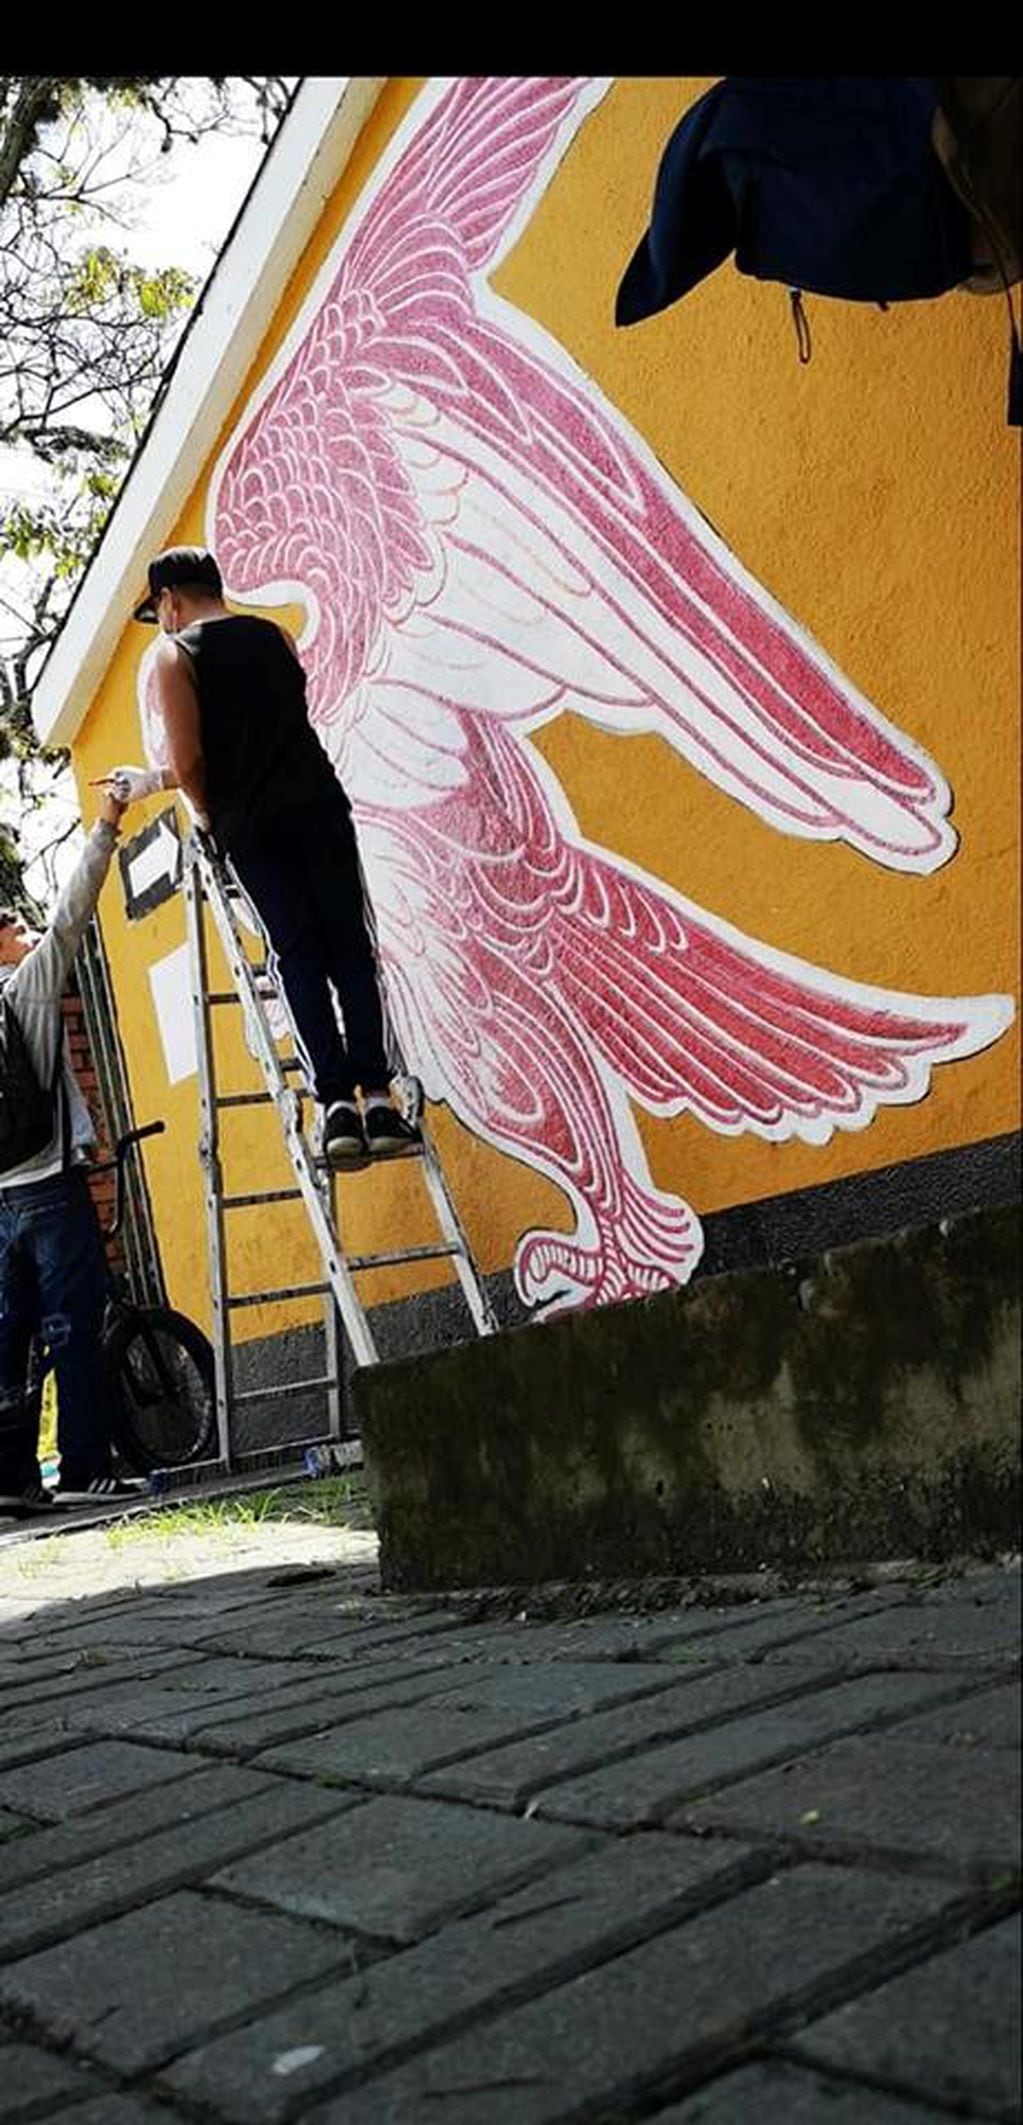 Un tatuador colombiano pintó un mural con sangre humana (Foto: Facebook/juliancastilloman)